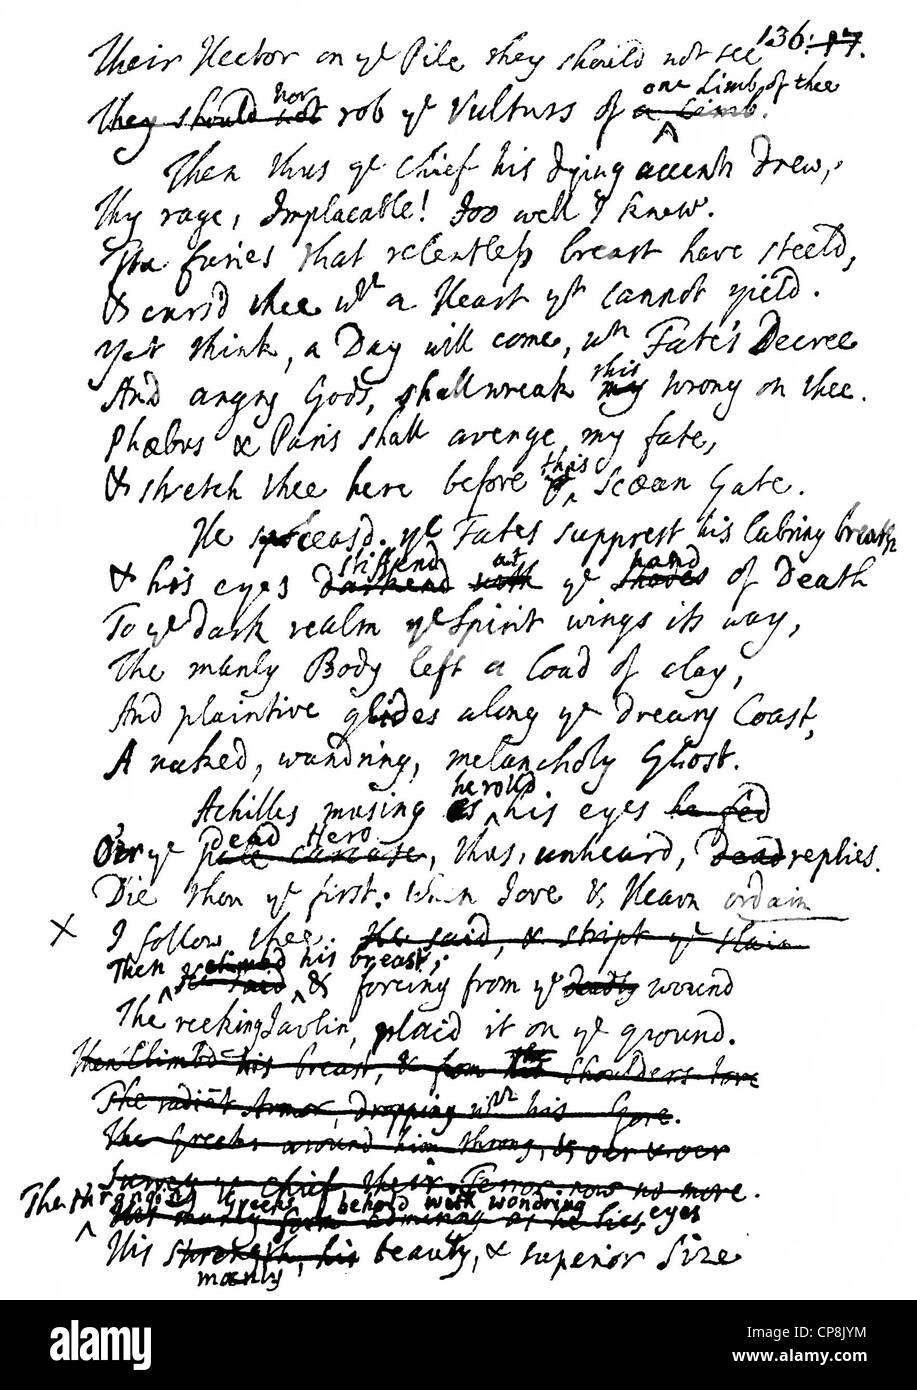 Historische Handschrift, Übersetzung von Homer von Alexander Pope, 1688-1744, englischer Dichter, Übersetzer und Schriftsteller des Neoklassizismus Stockfoto